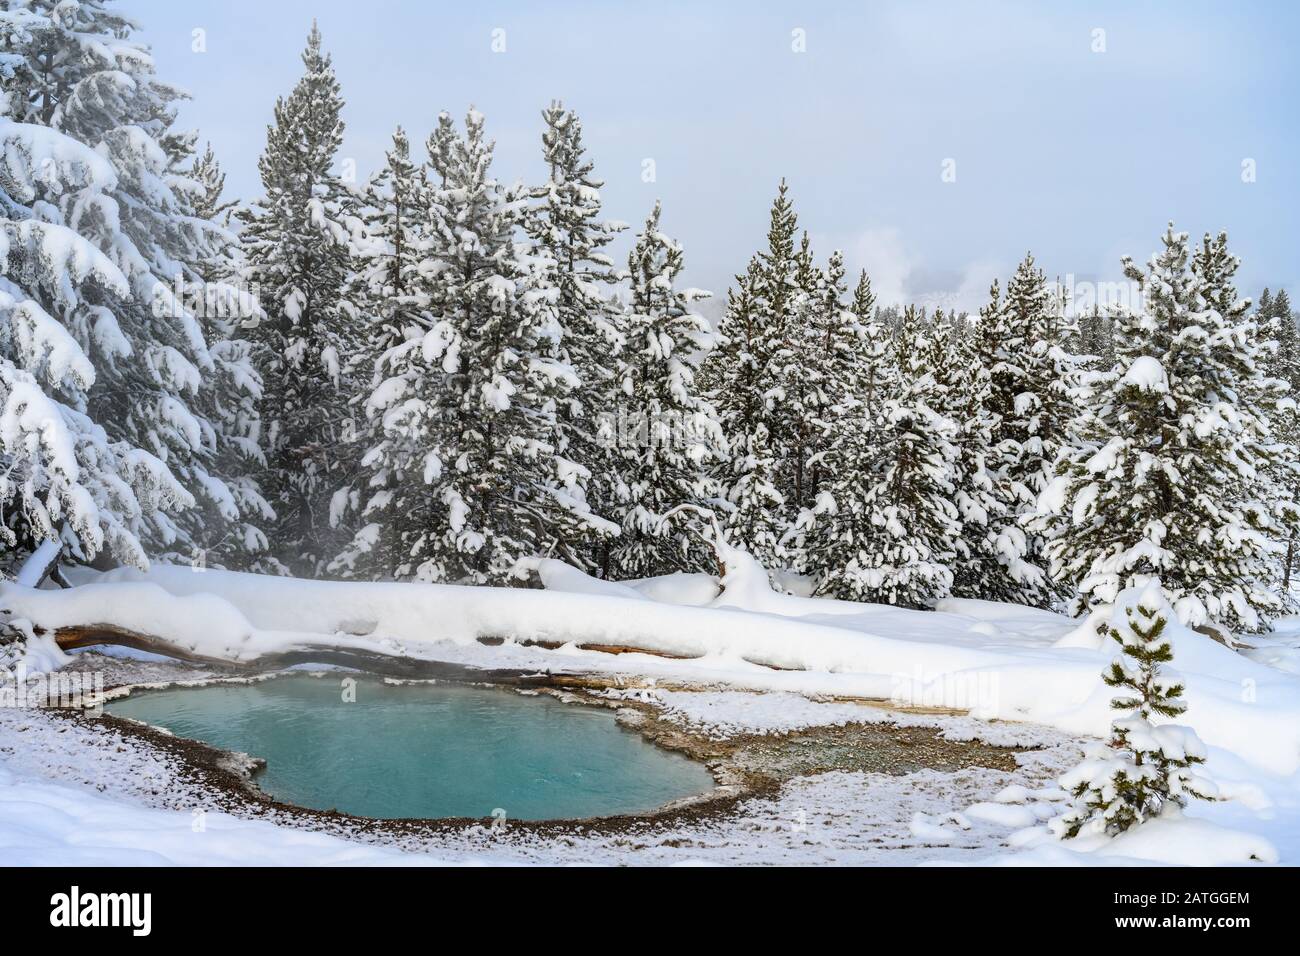 Ein Pool mit heißem Quellwasser im winterlichen Wald. Yellowstone National Park, Wyoming, USA. Stockfoto